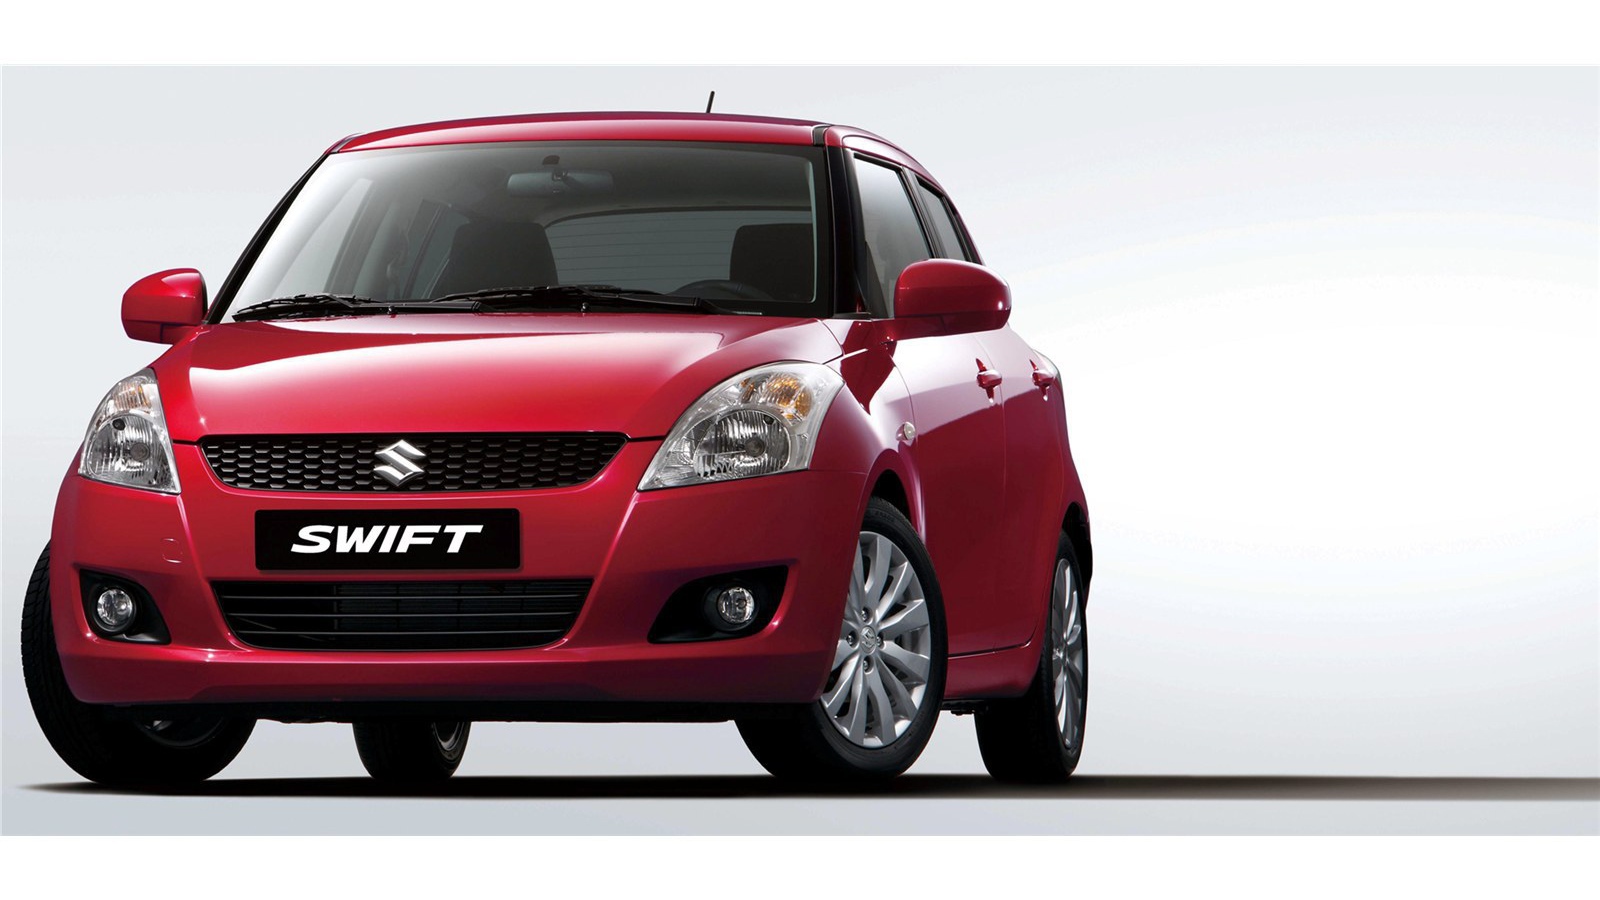 Автомобиль марки Suzuki модели Swift